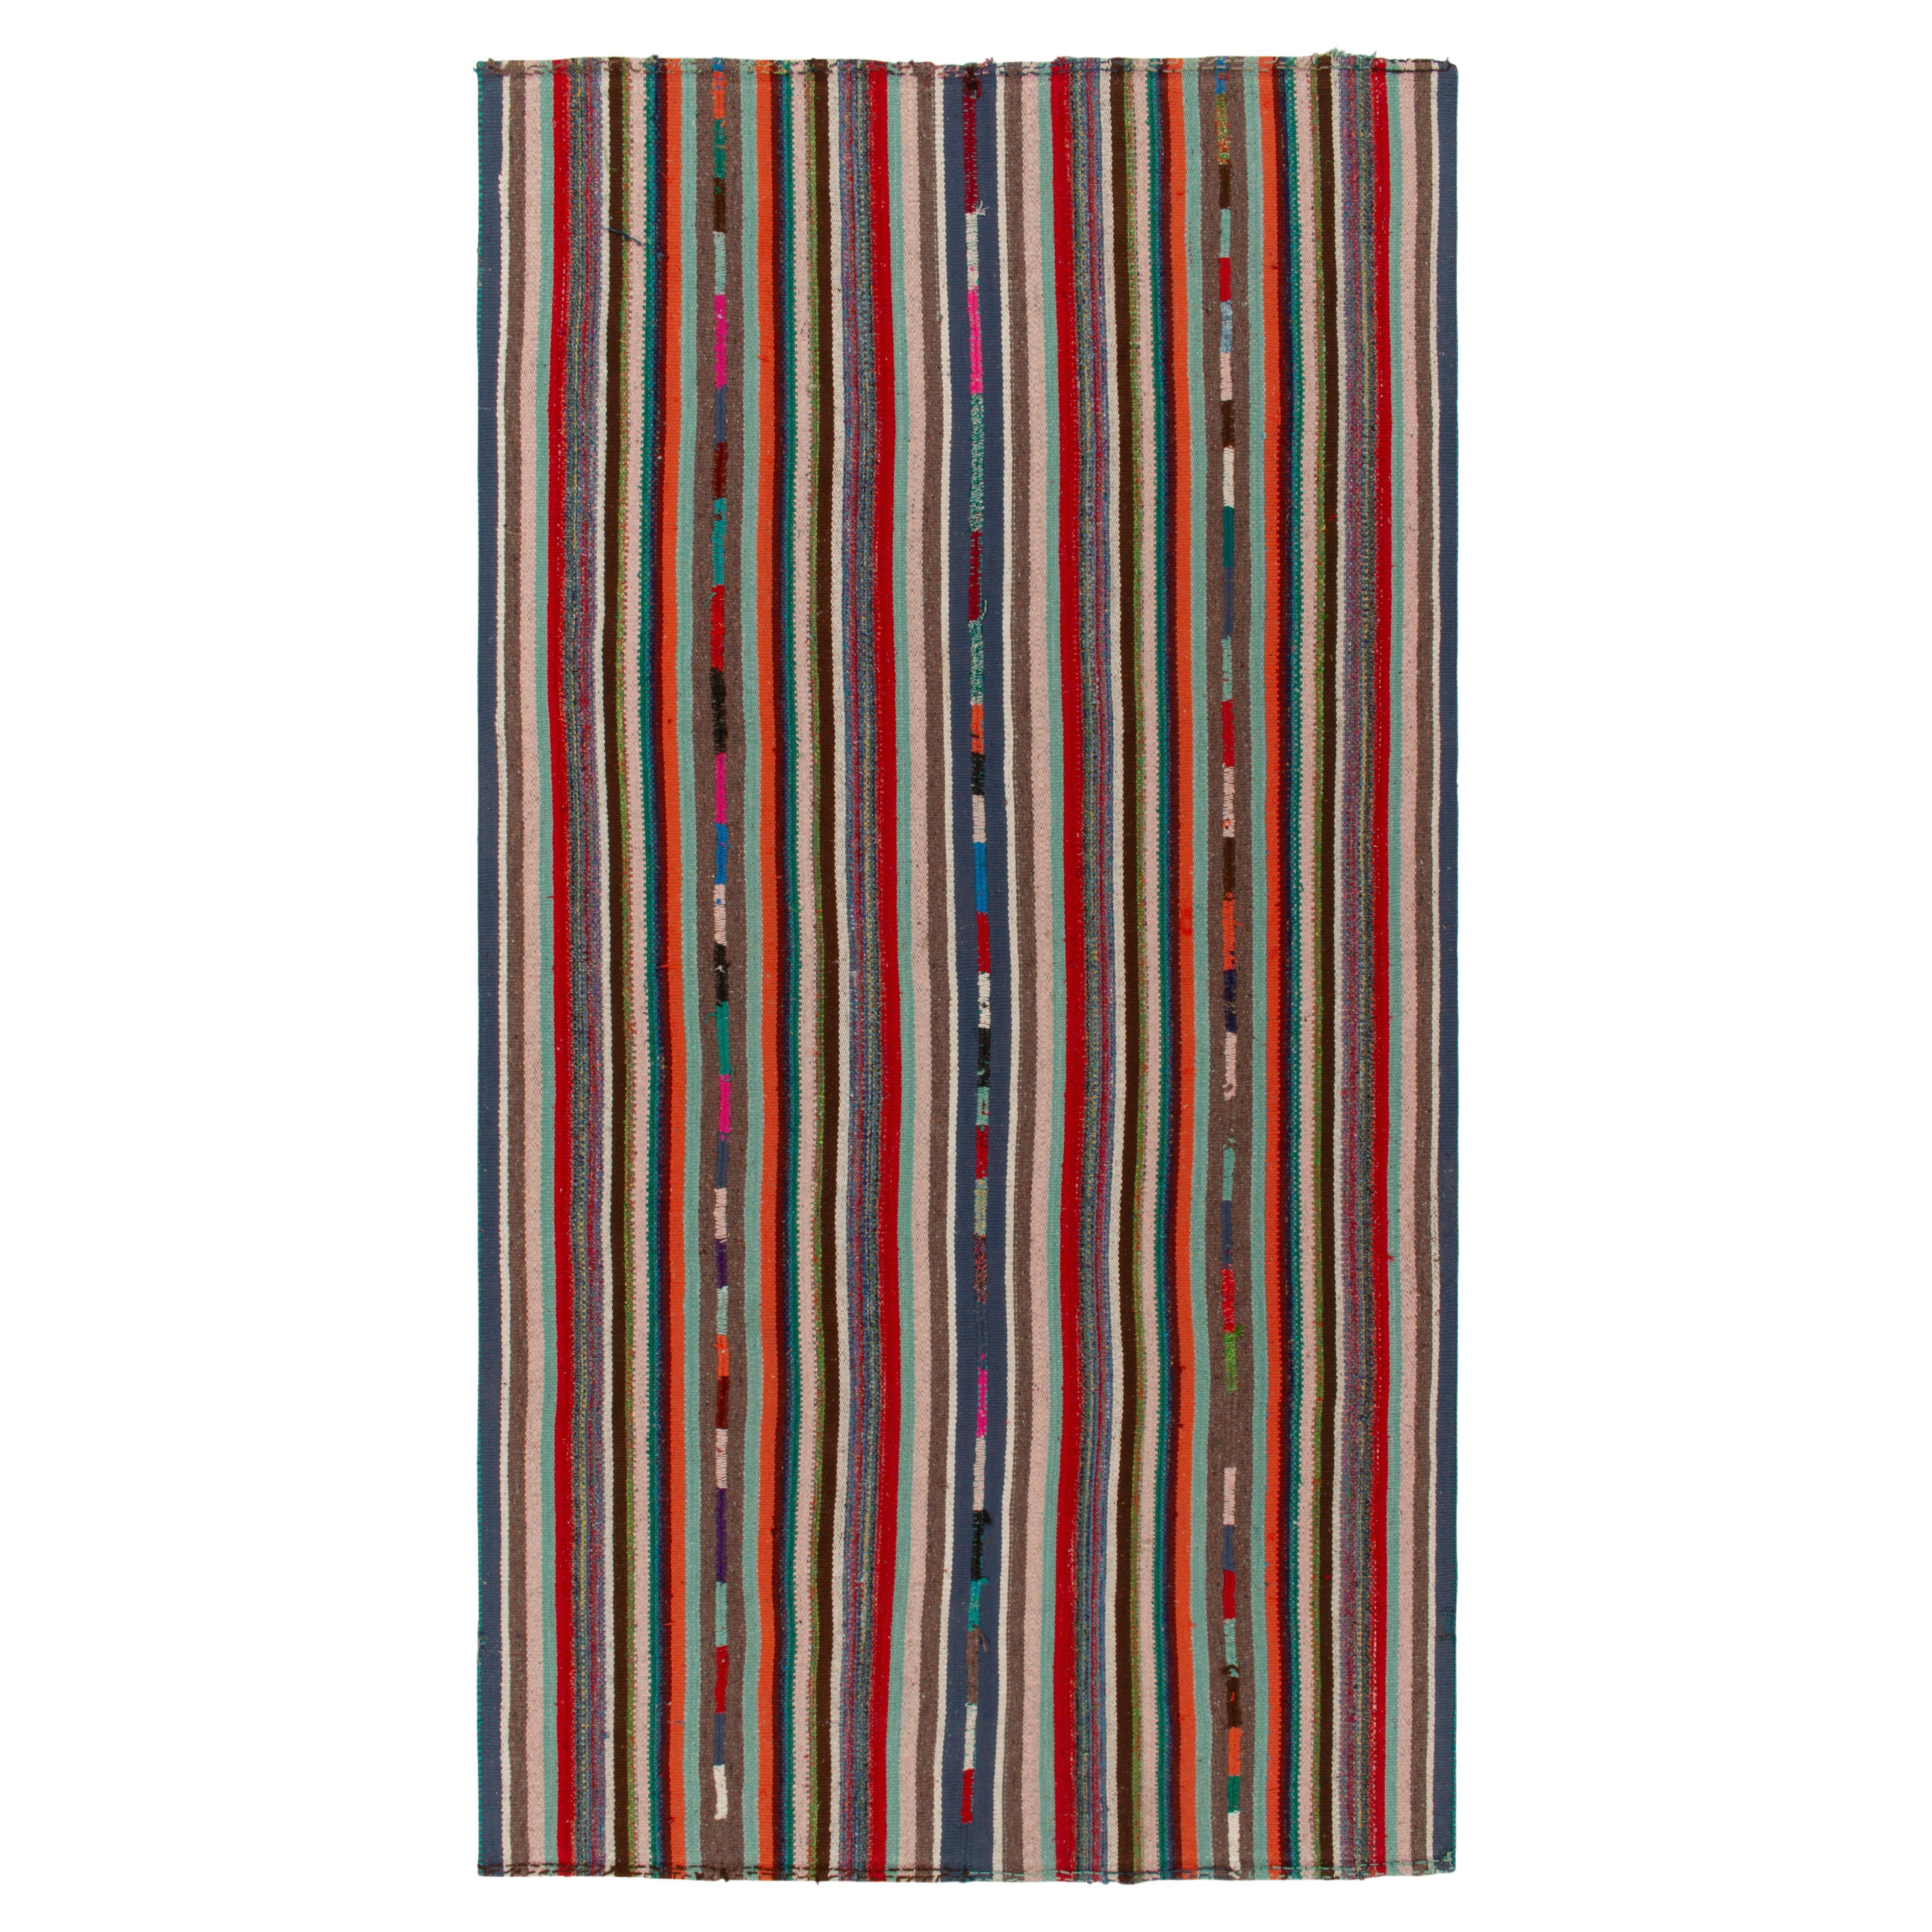 1950er Jahre Vintage Chaput-Kelim-Teppich in Streifenmuster, mehrfarbig von Teppich & Kelim